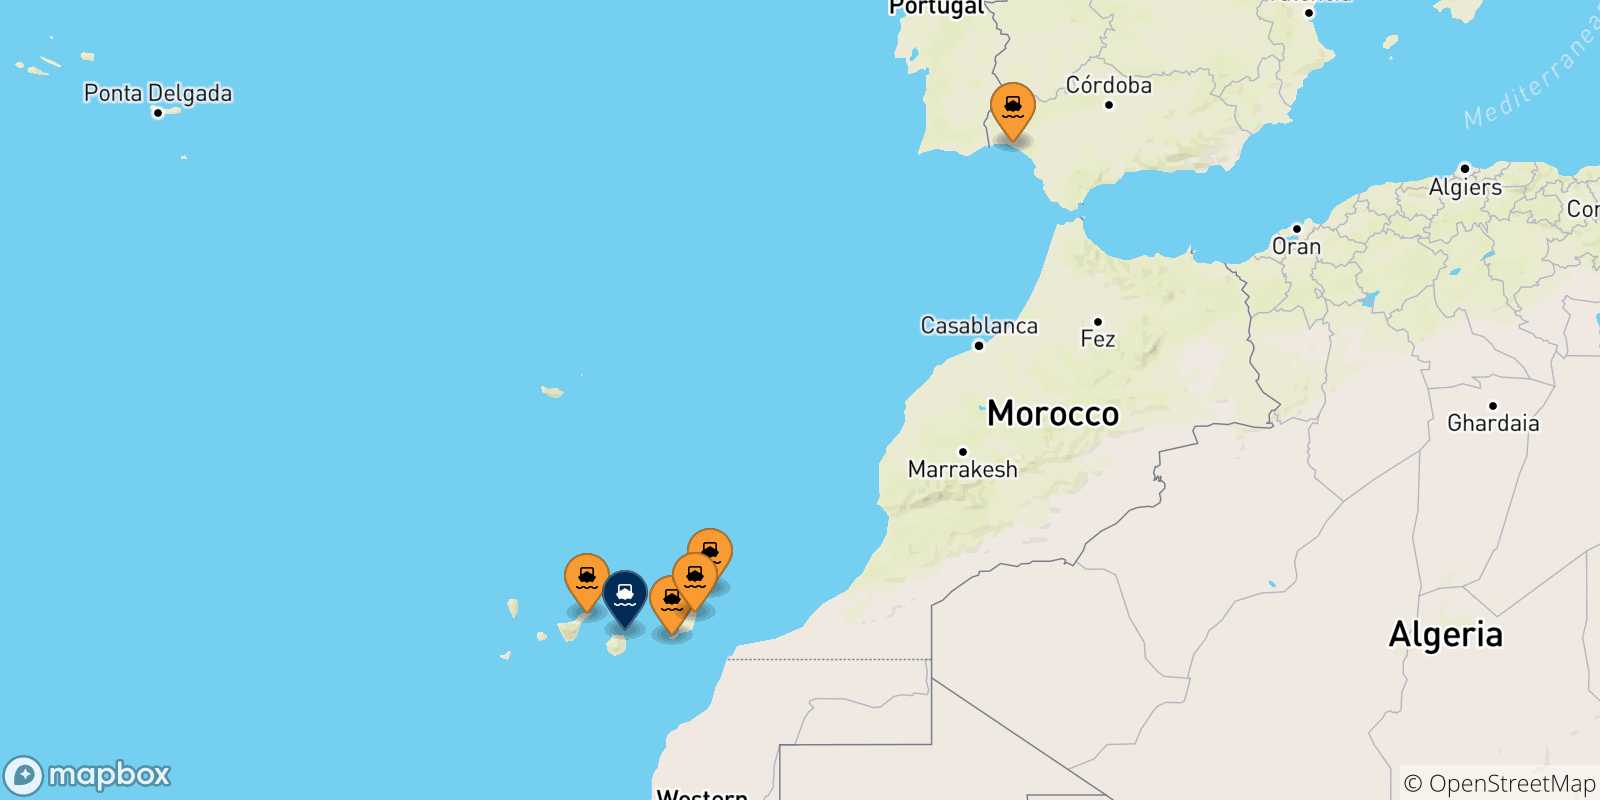 Mappa delle possibili rotte tra la Spagna e Las Palmas De Gran Canaria